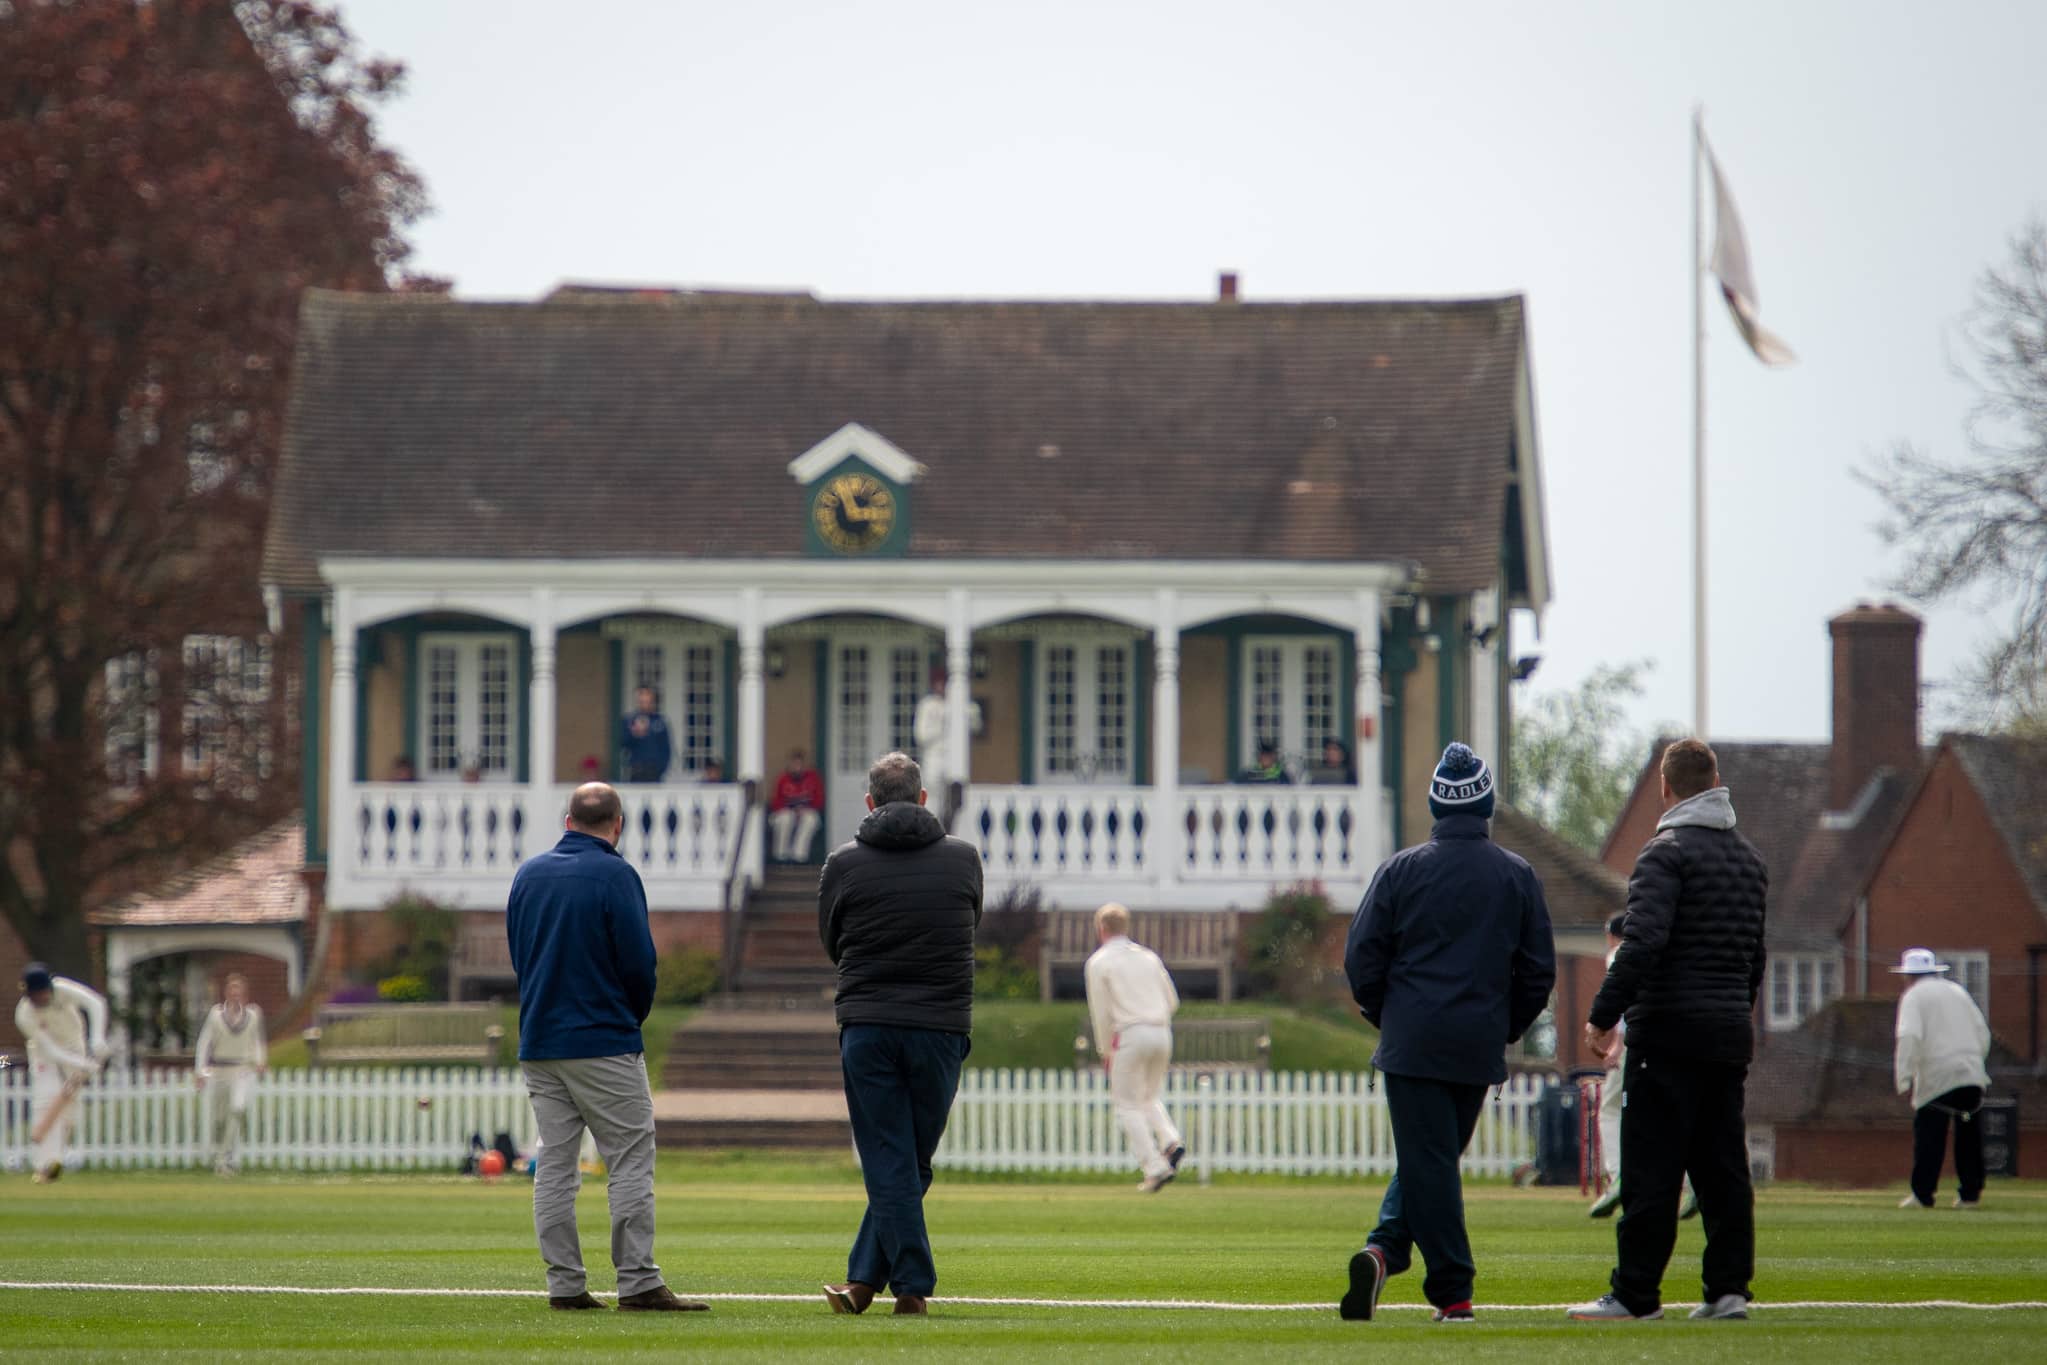 cricket pavilion at Radley College